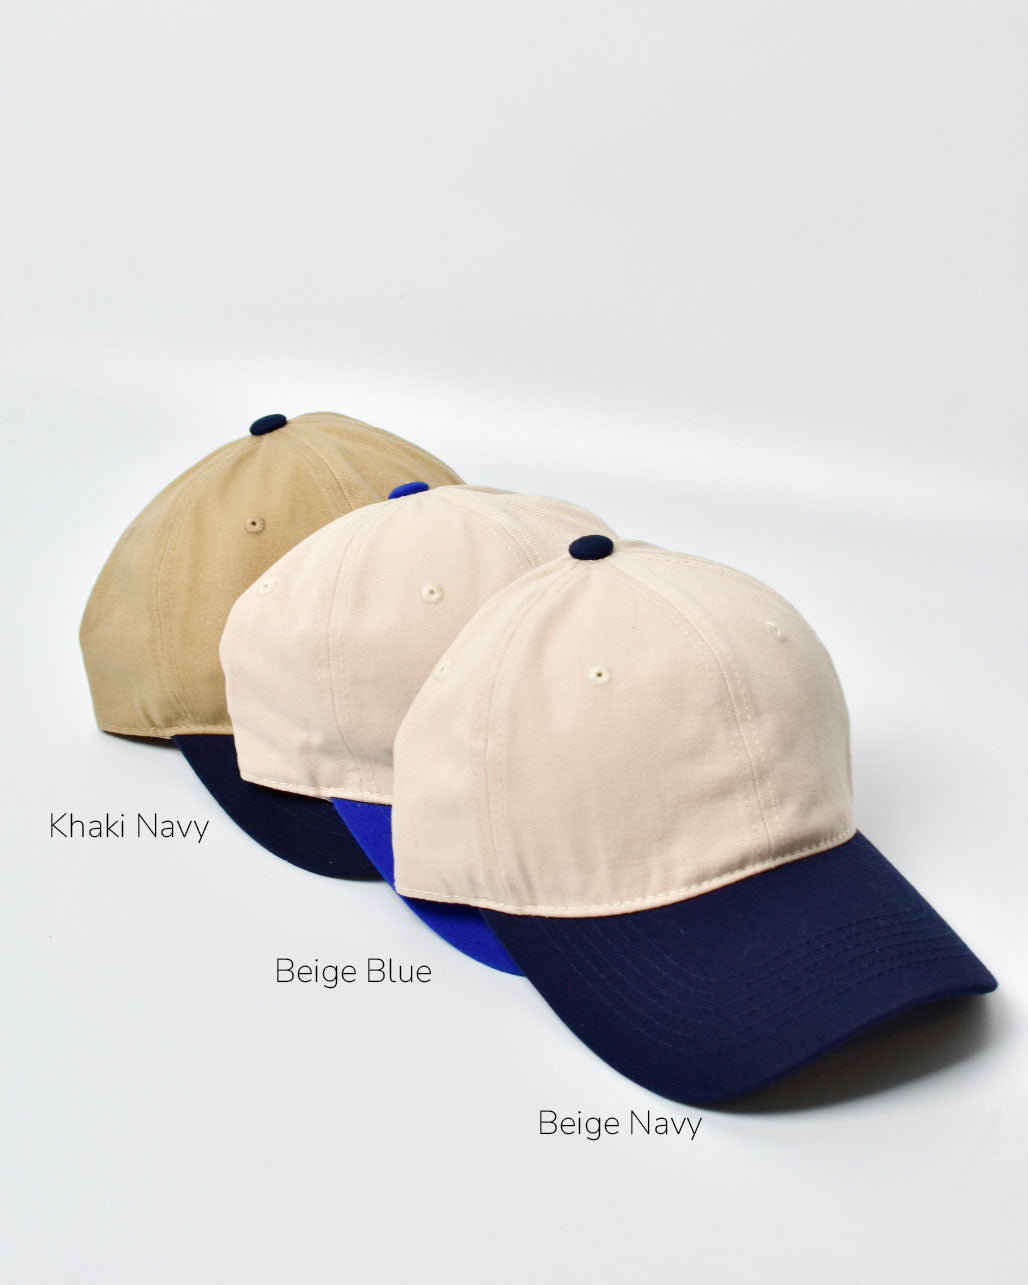 SIGNATURE / Duo-toned Khaki Navy Cap